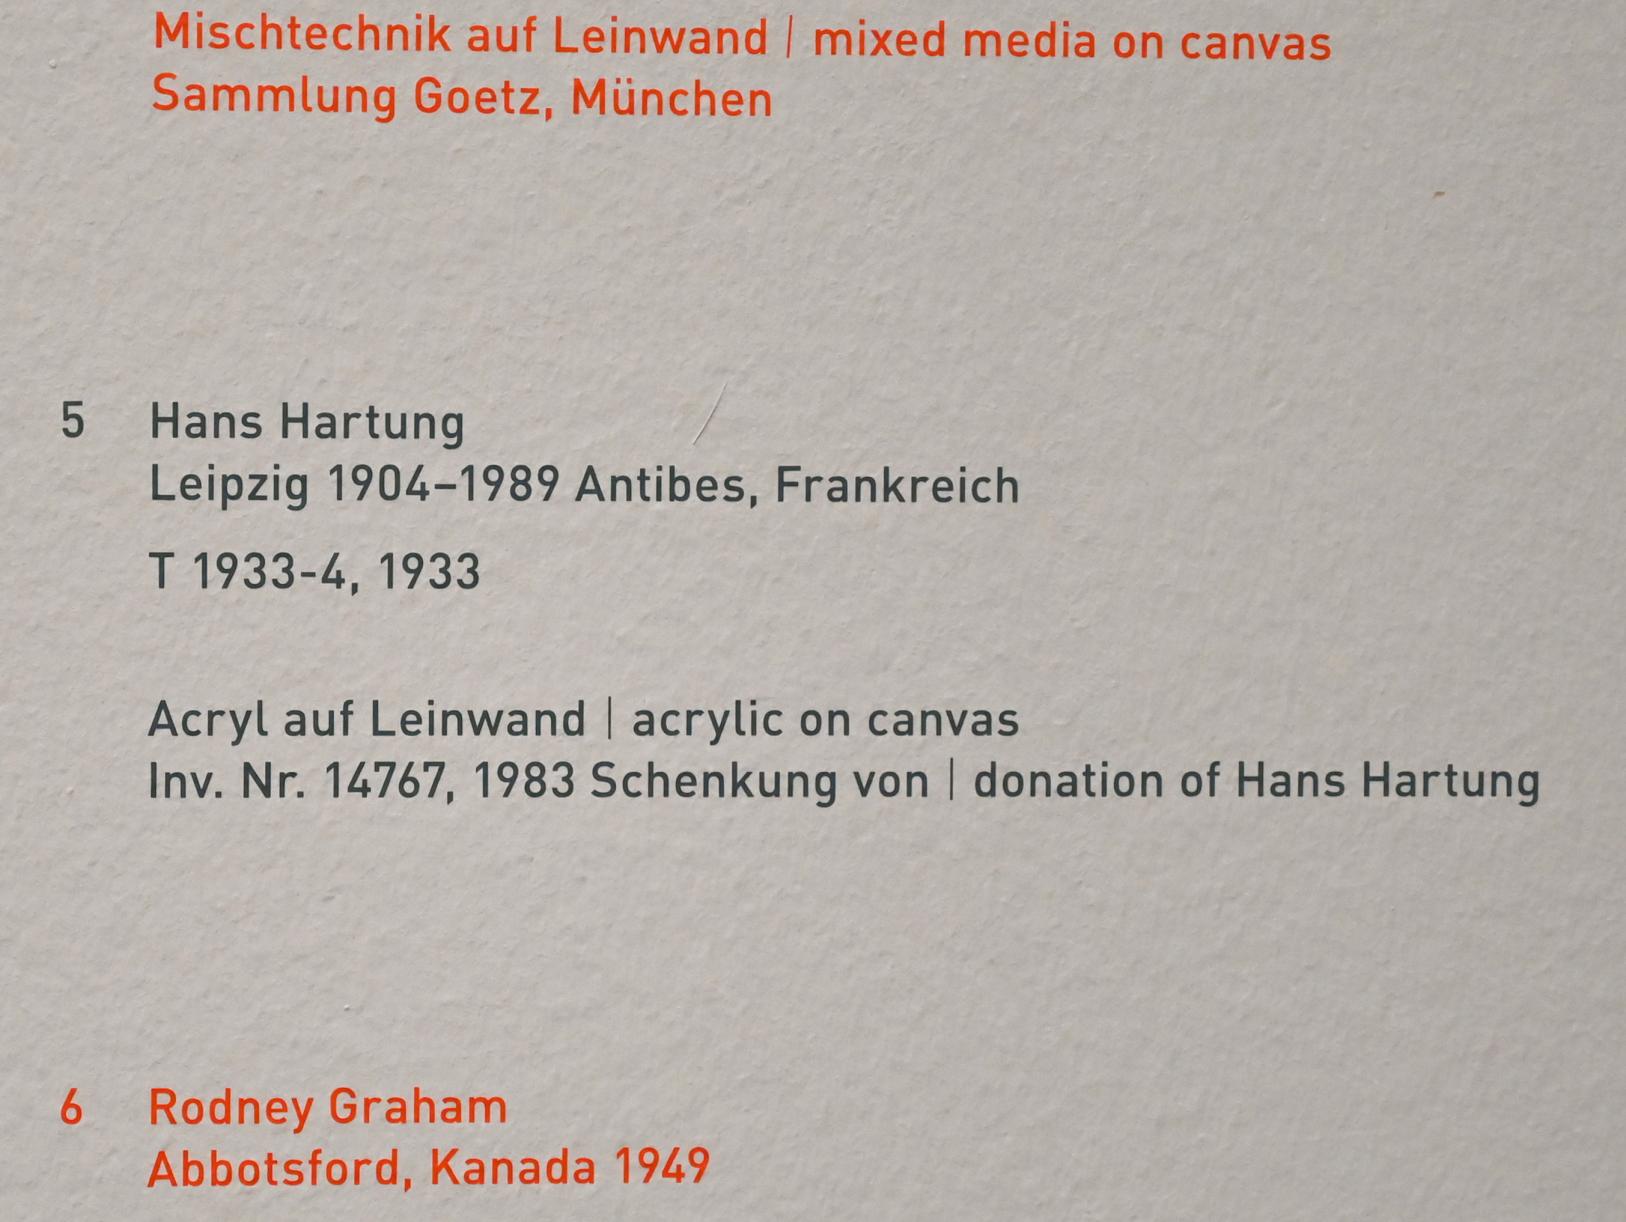 Hans Hartung (1933–1989), T 1933-4, München, Pinakothek der Moderne, Saal 15, 1933, Bild 2/2